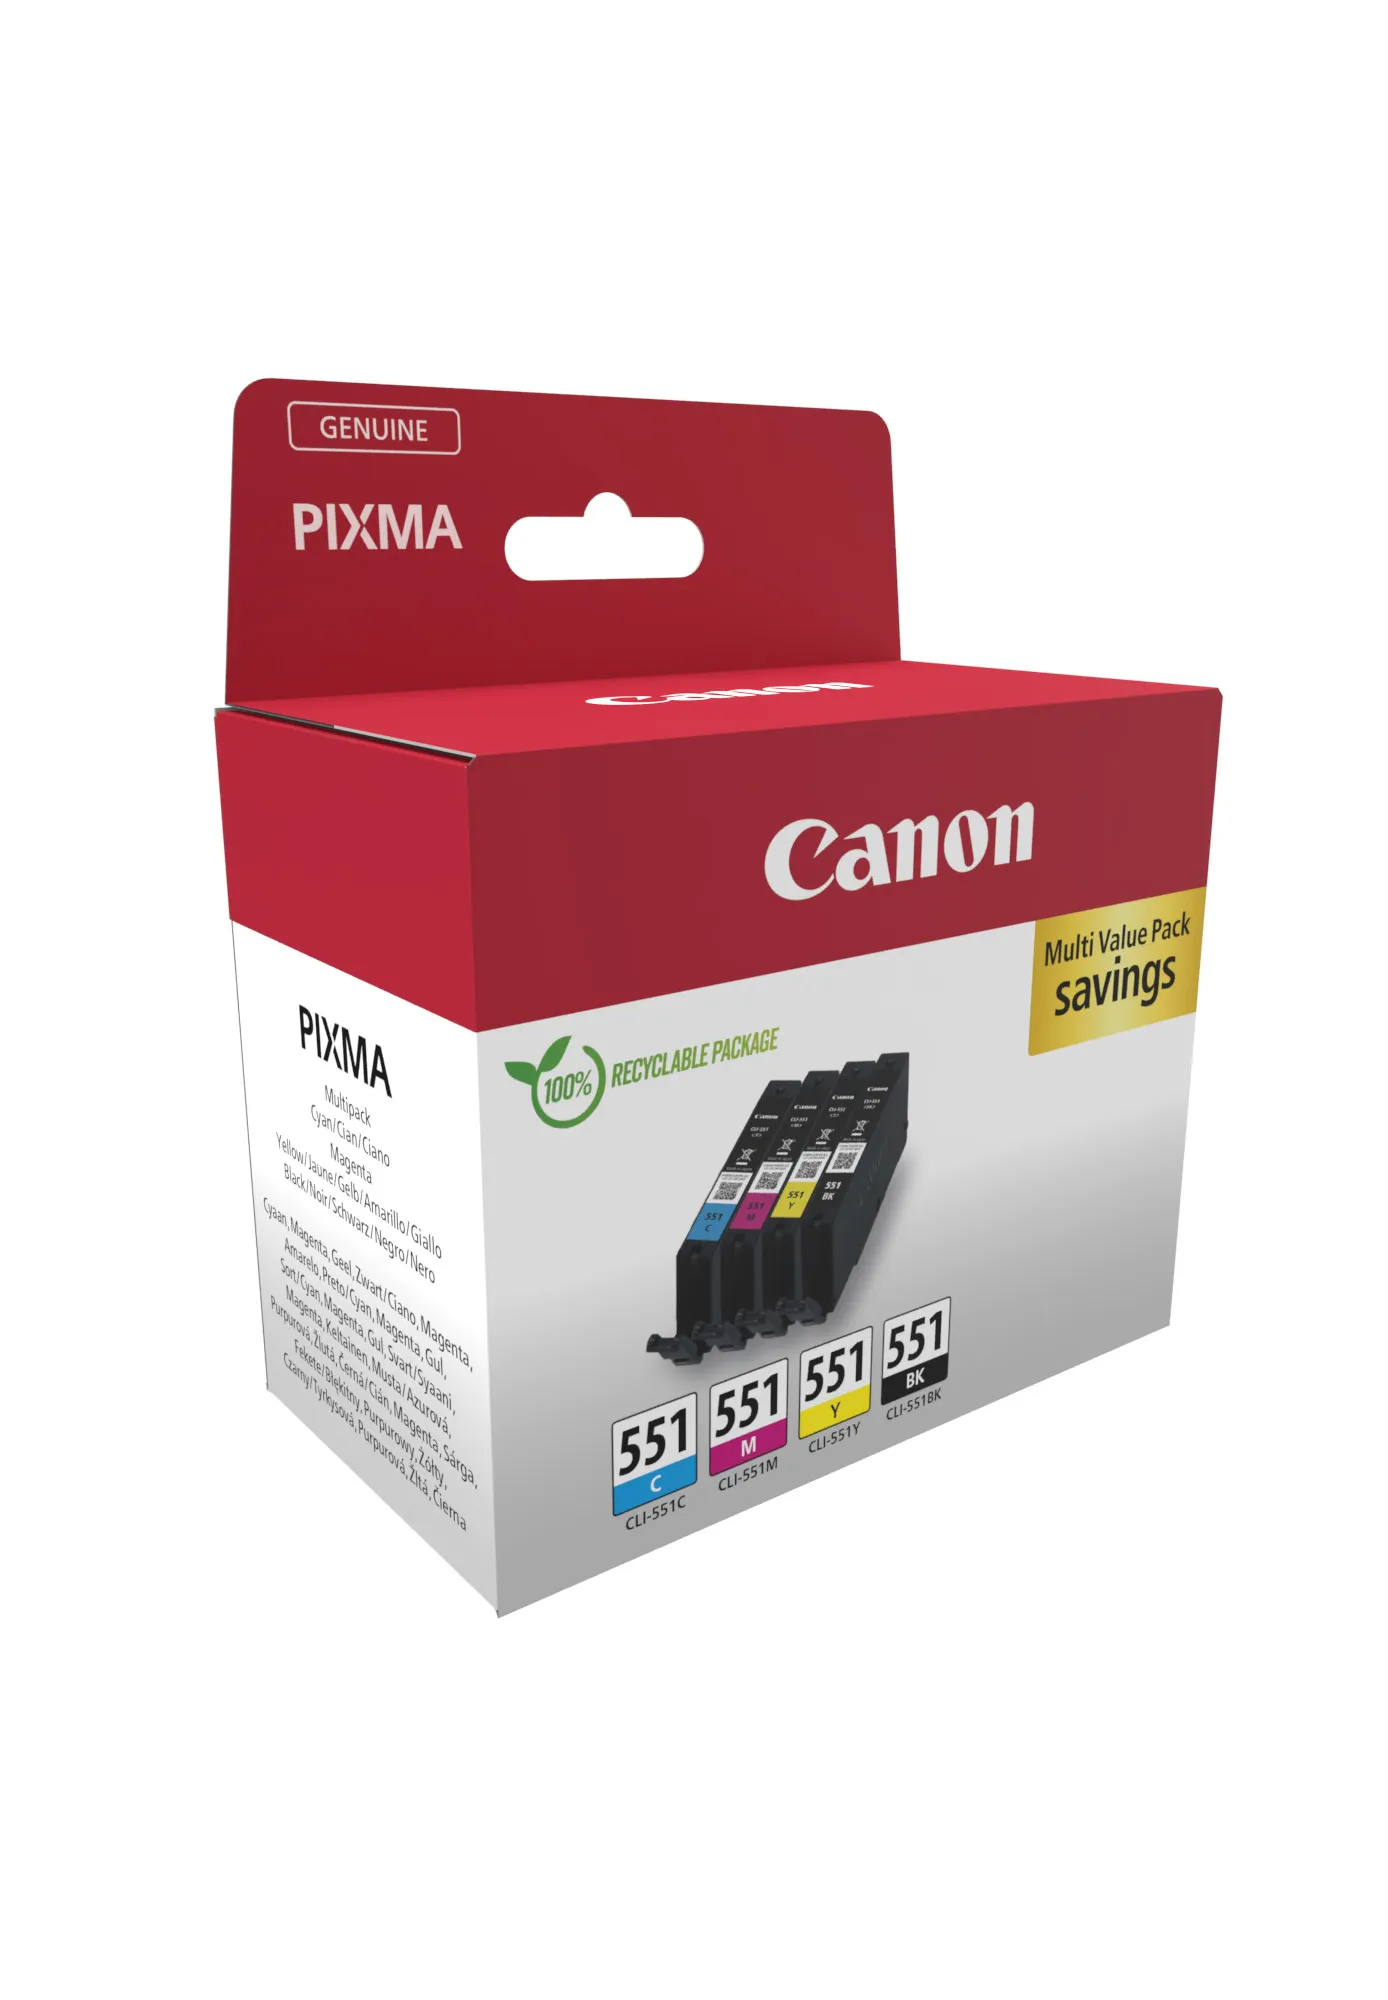 Vente CANON CLI-551 Ink Cartridge C/M/Y/BK MultiPack blister Canon au meilleur prix - visuel 2